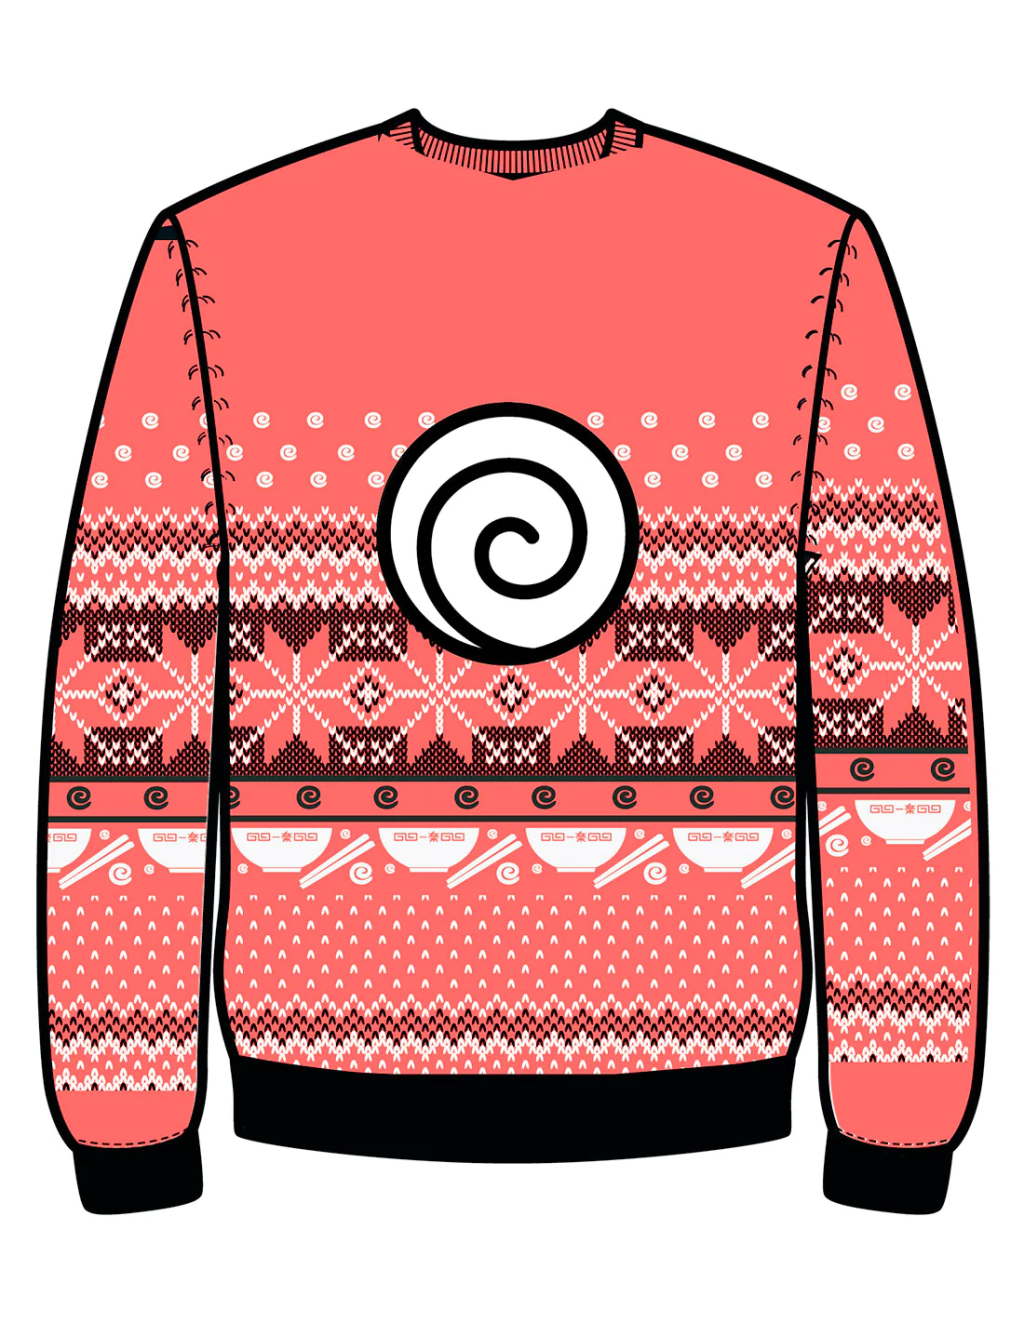 NARUTO - Ramen Ichiraku - Men Christmas Sweaters (XS)